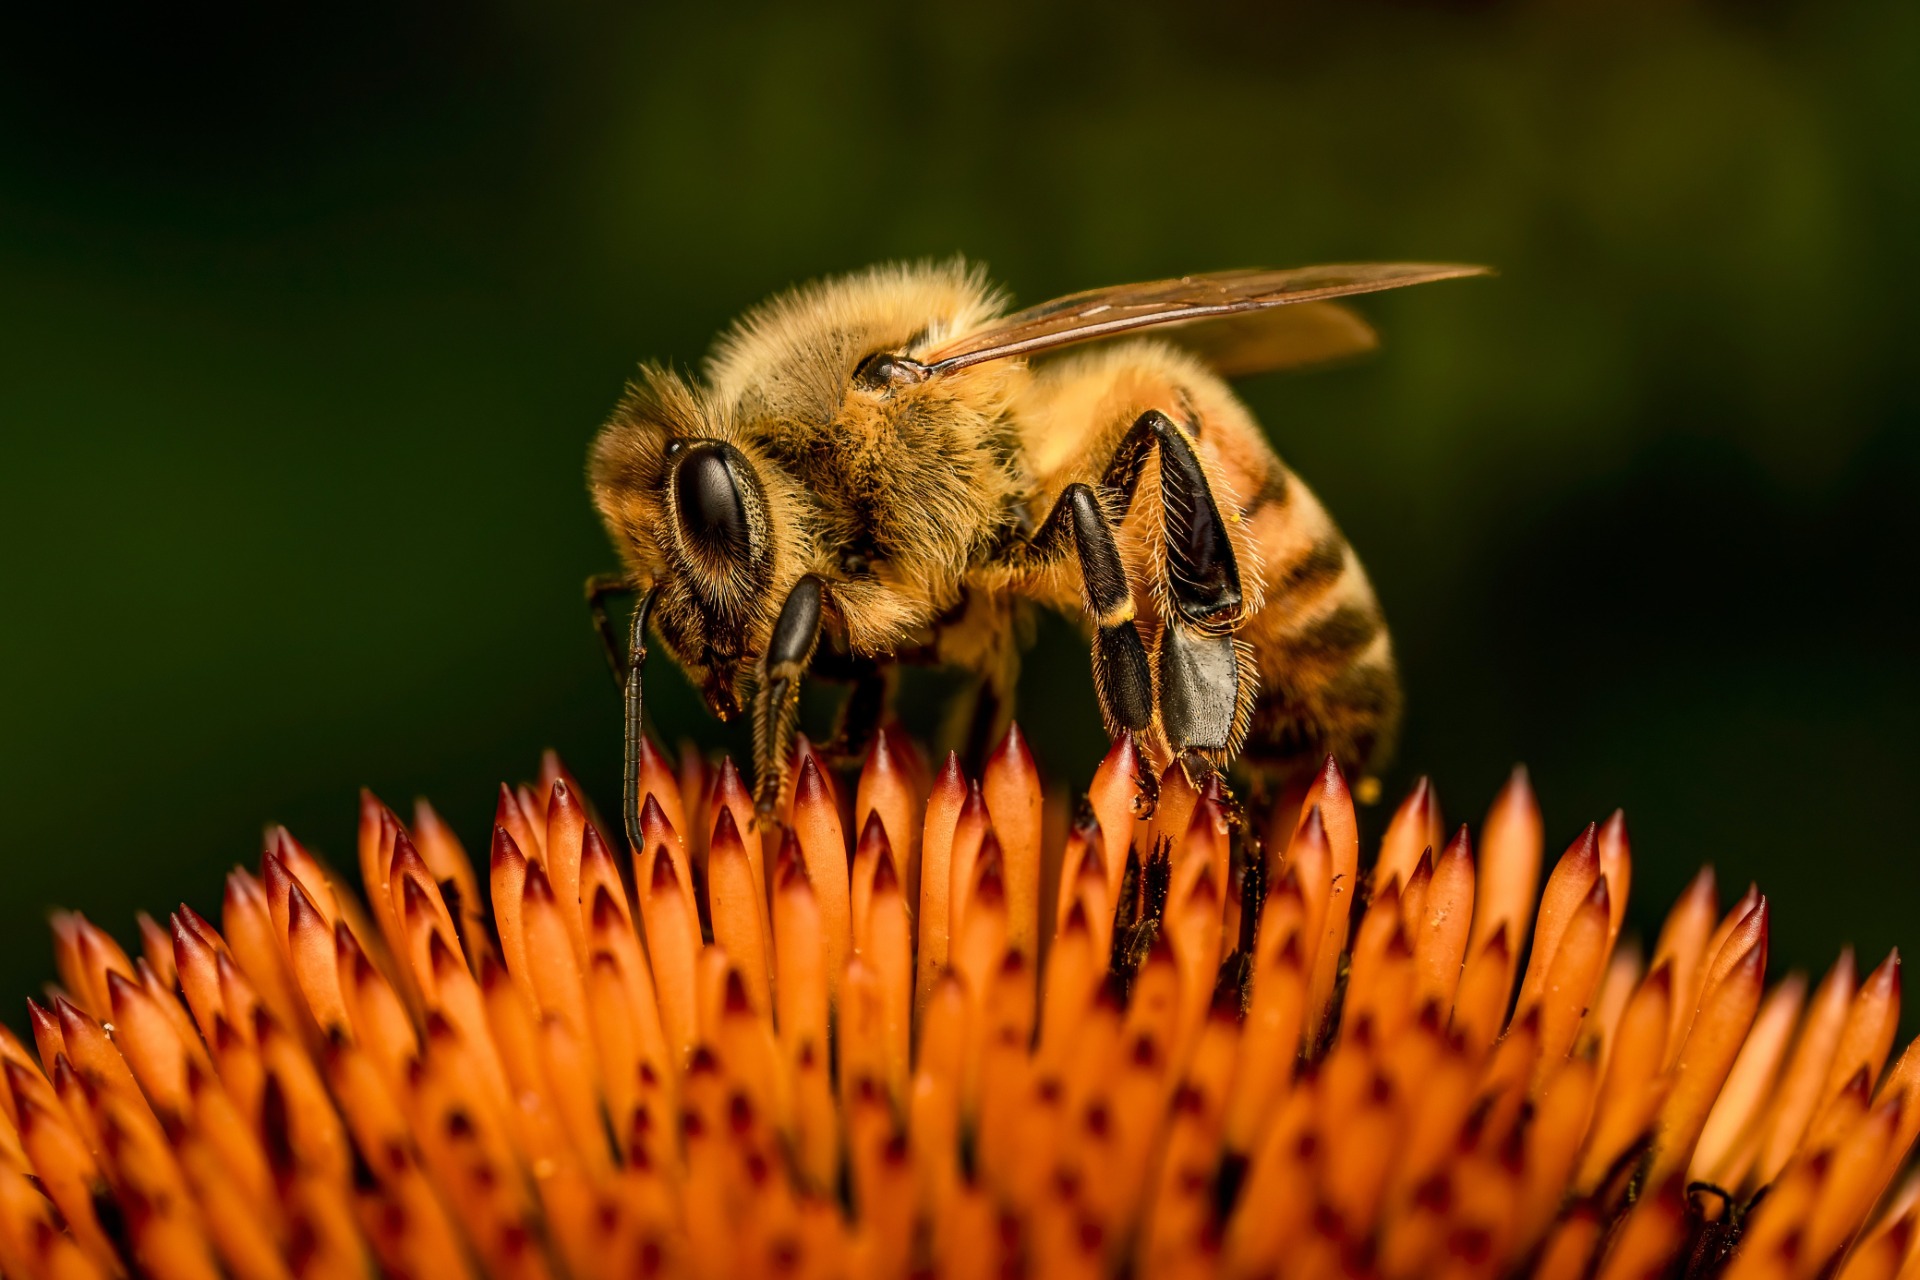 bee garden - a photo of a bee